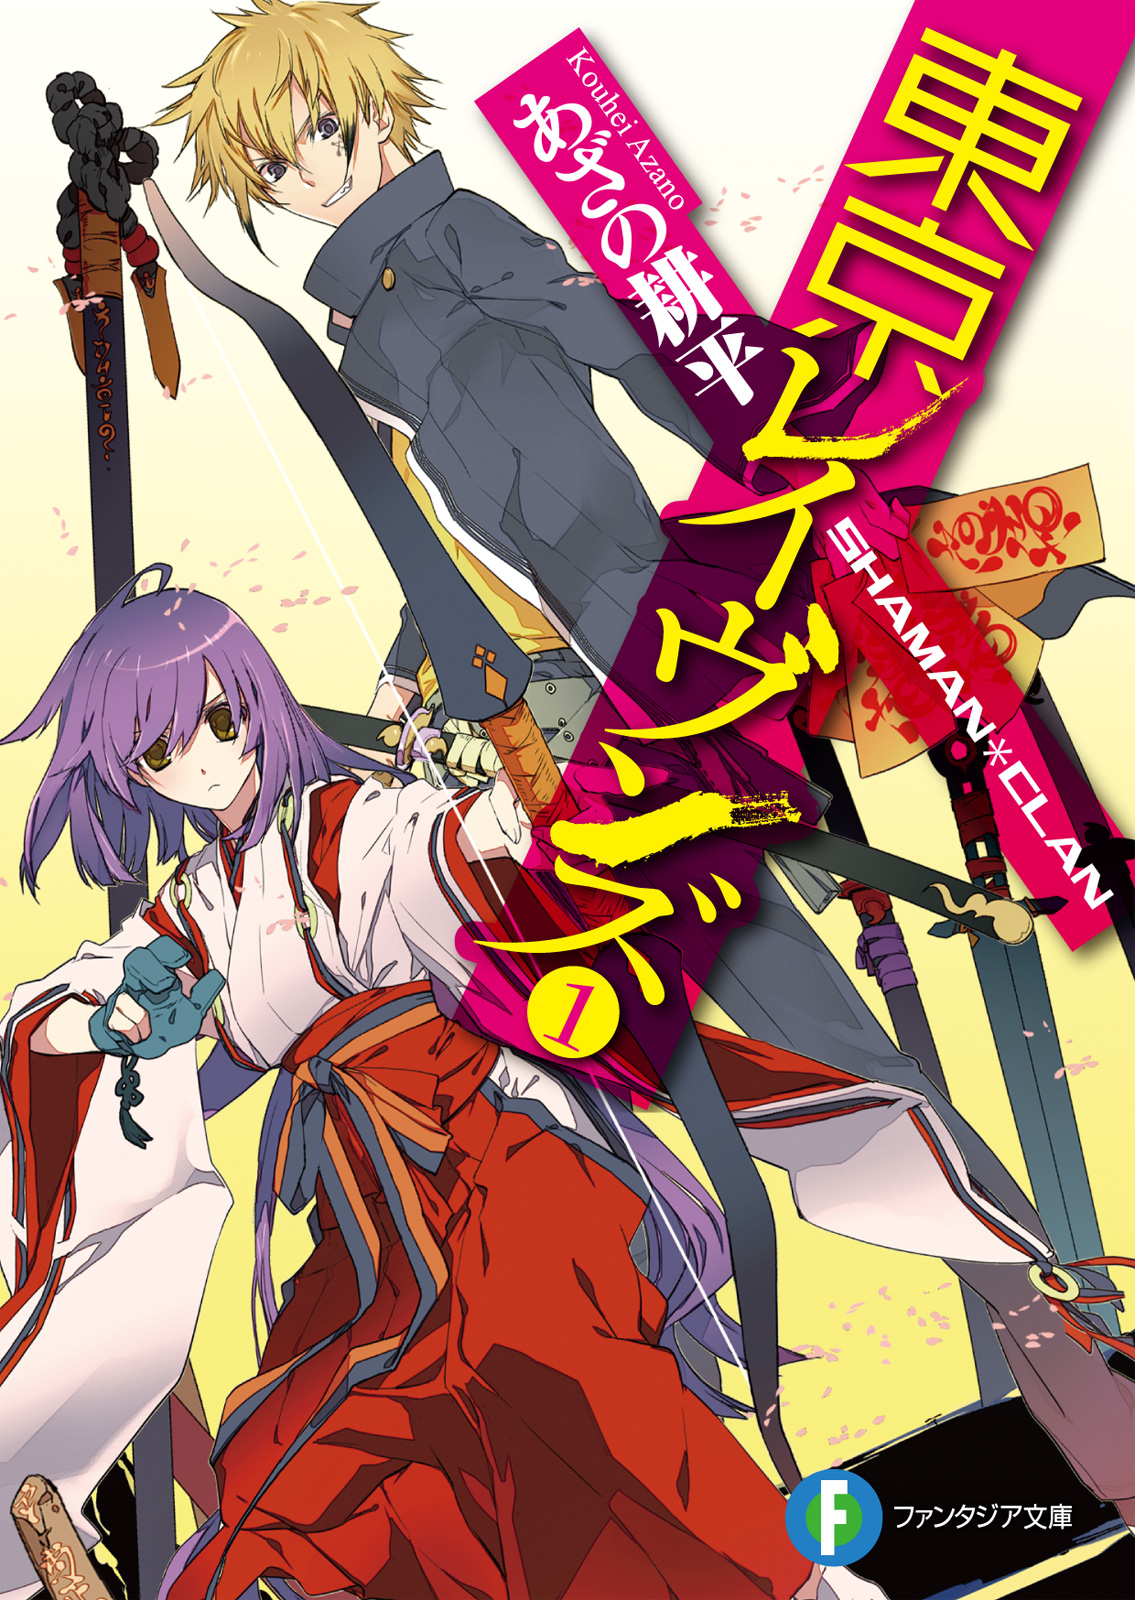 Tokyo Ravens Light Novel Books Read Online - Webnovel